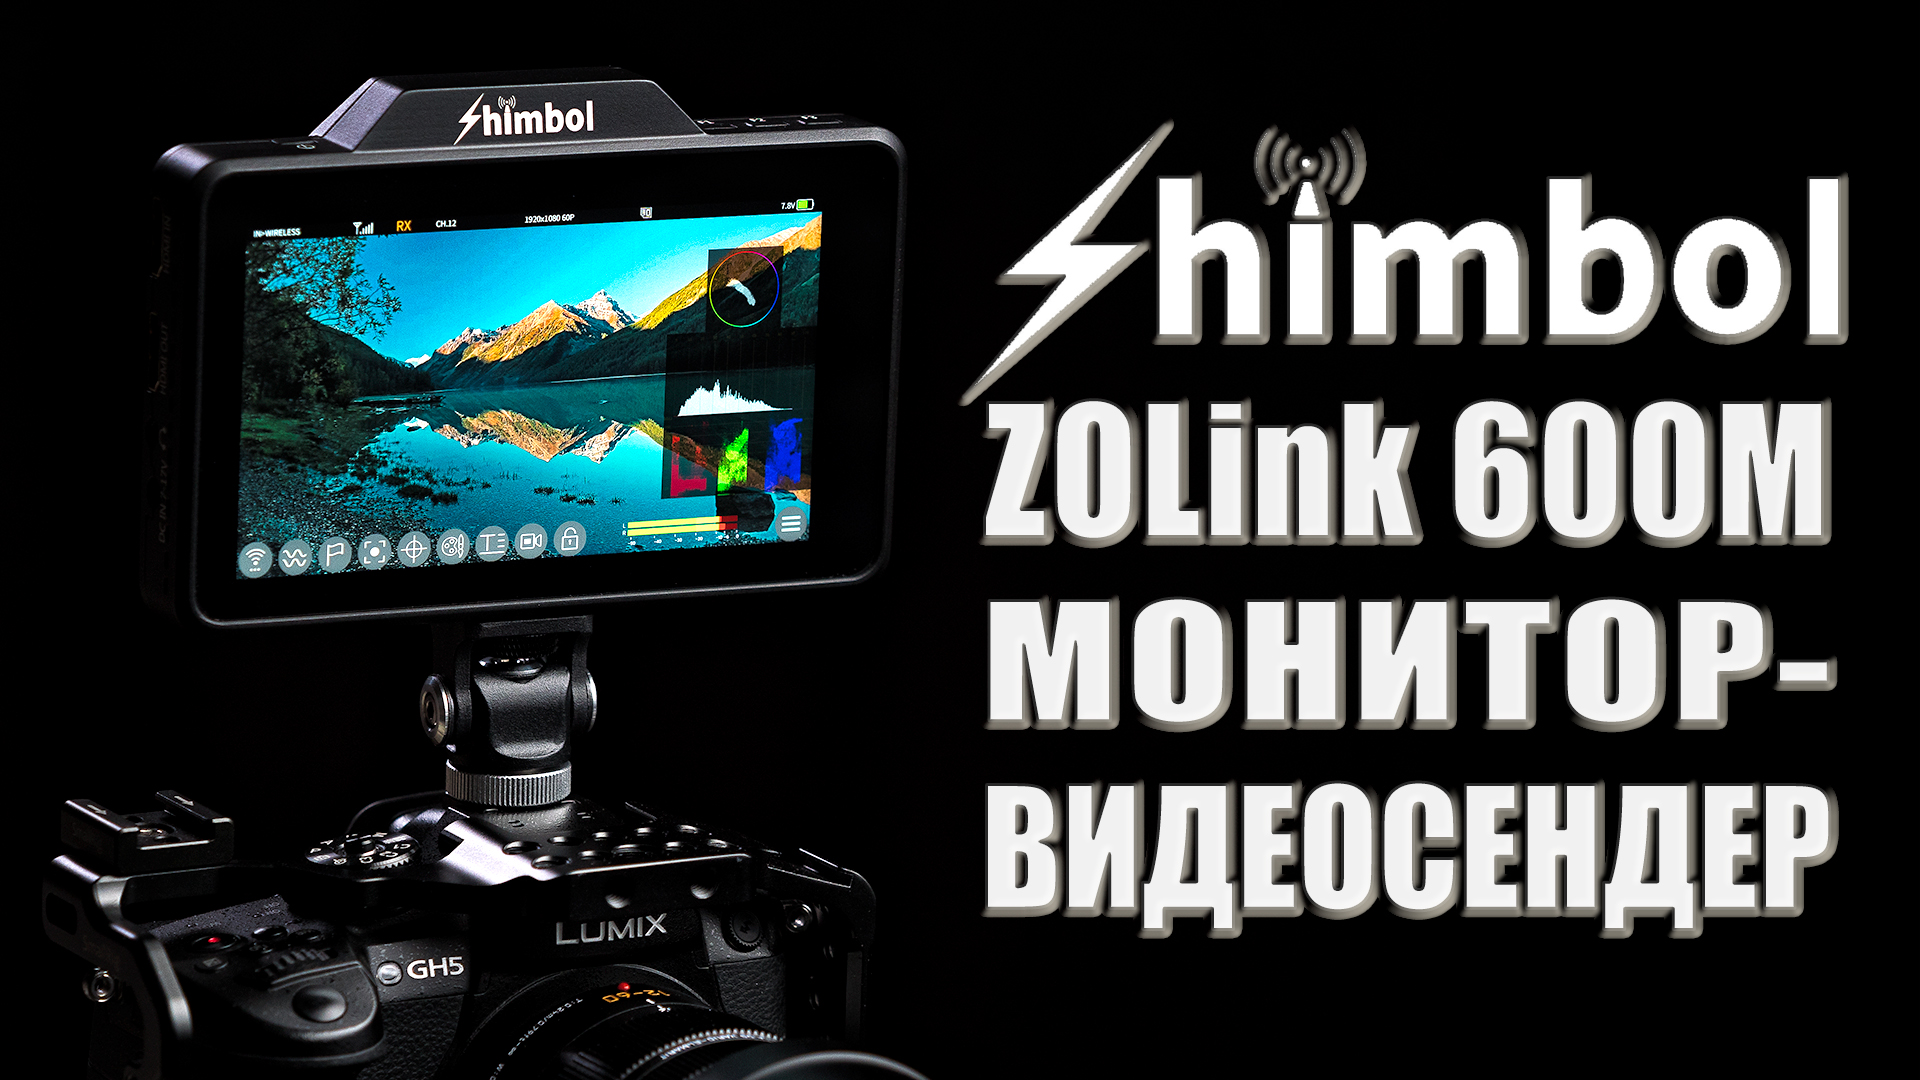 Shimbol ZOlink 600M | Монитор-видеосендер 2-в-1 | Удобно и экономно